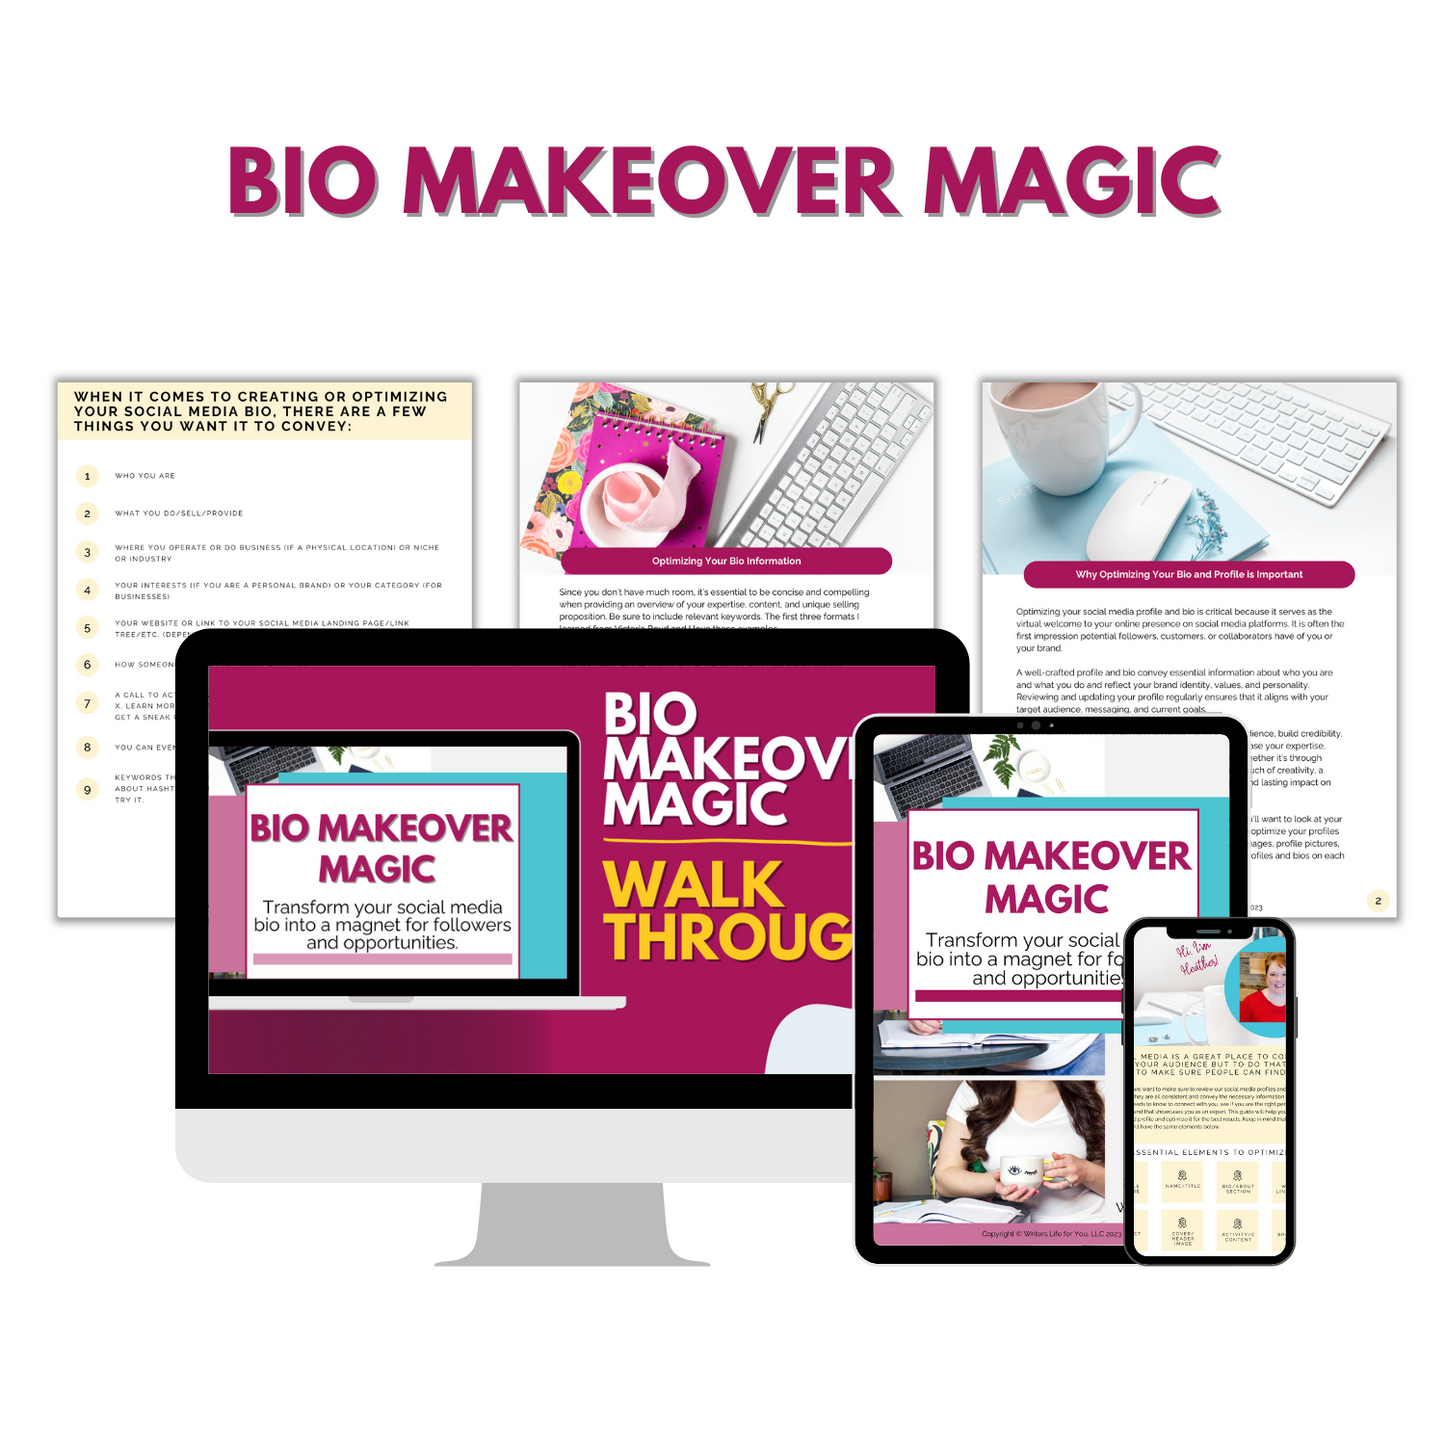 Bio Makeover Magic Guide